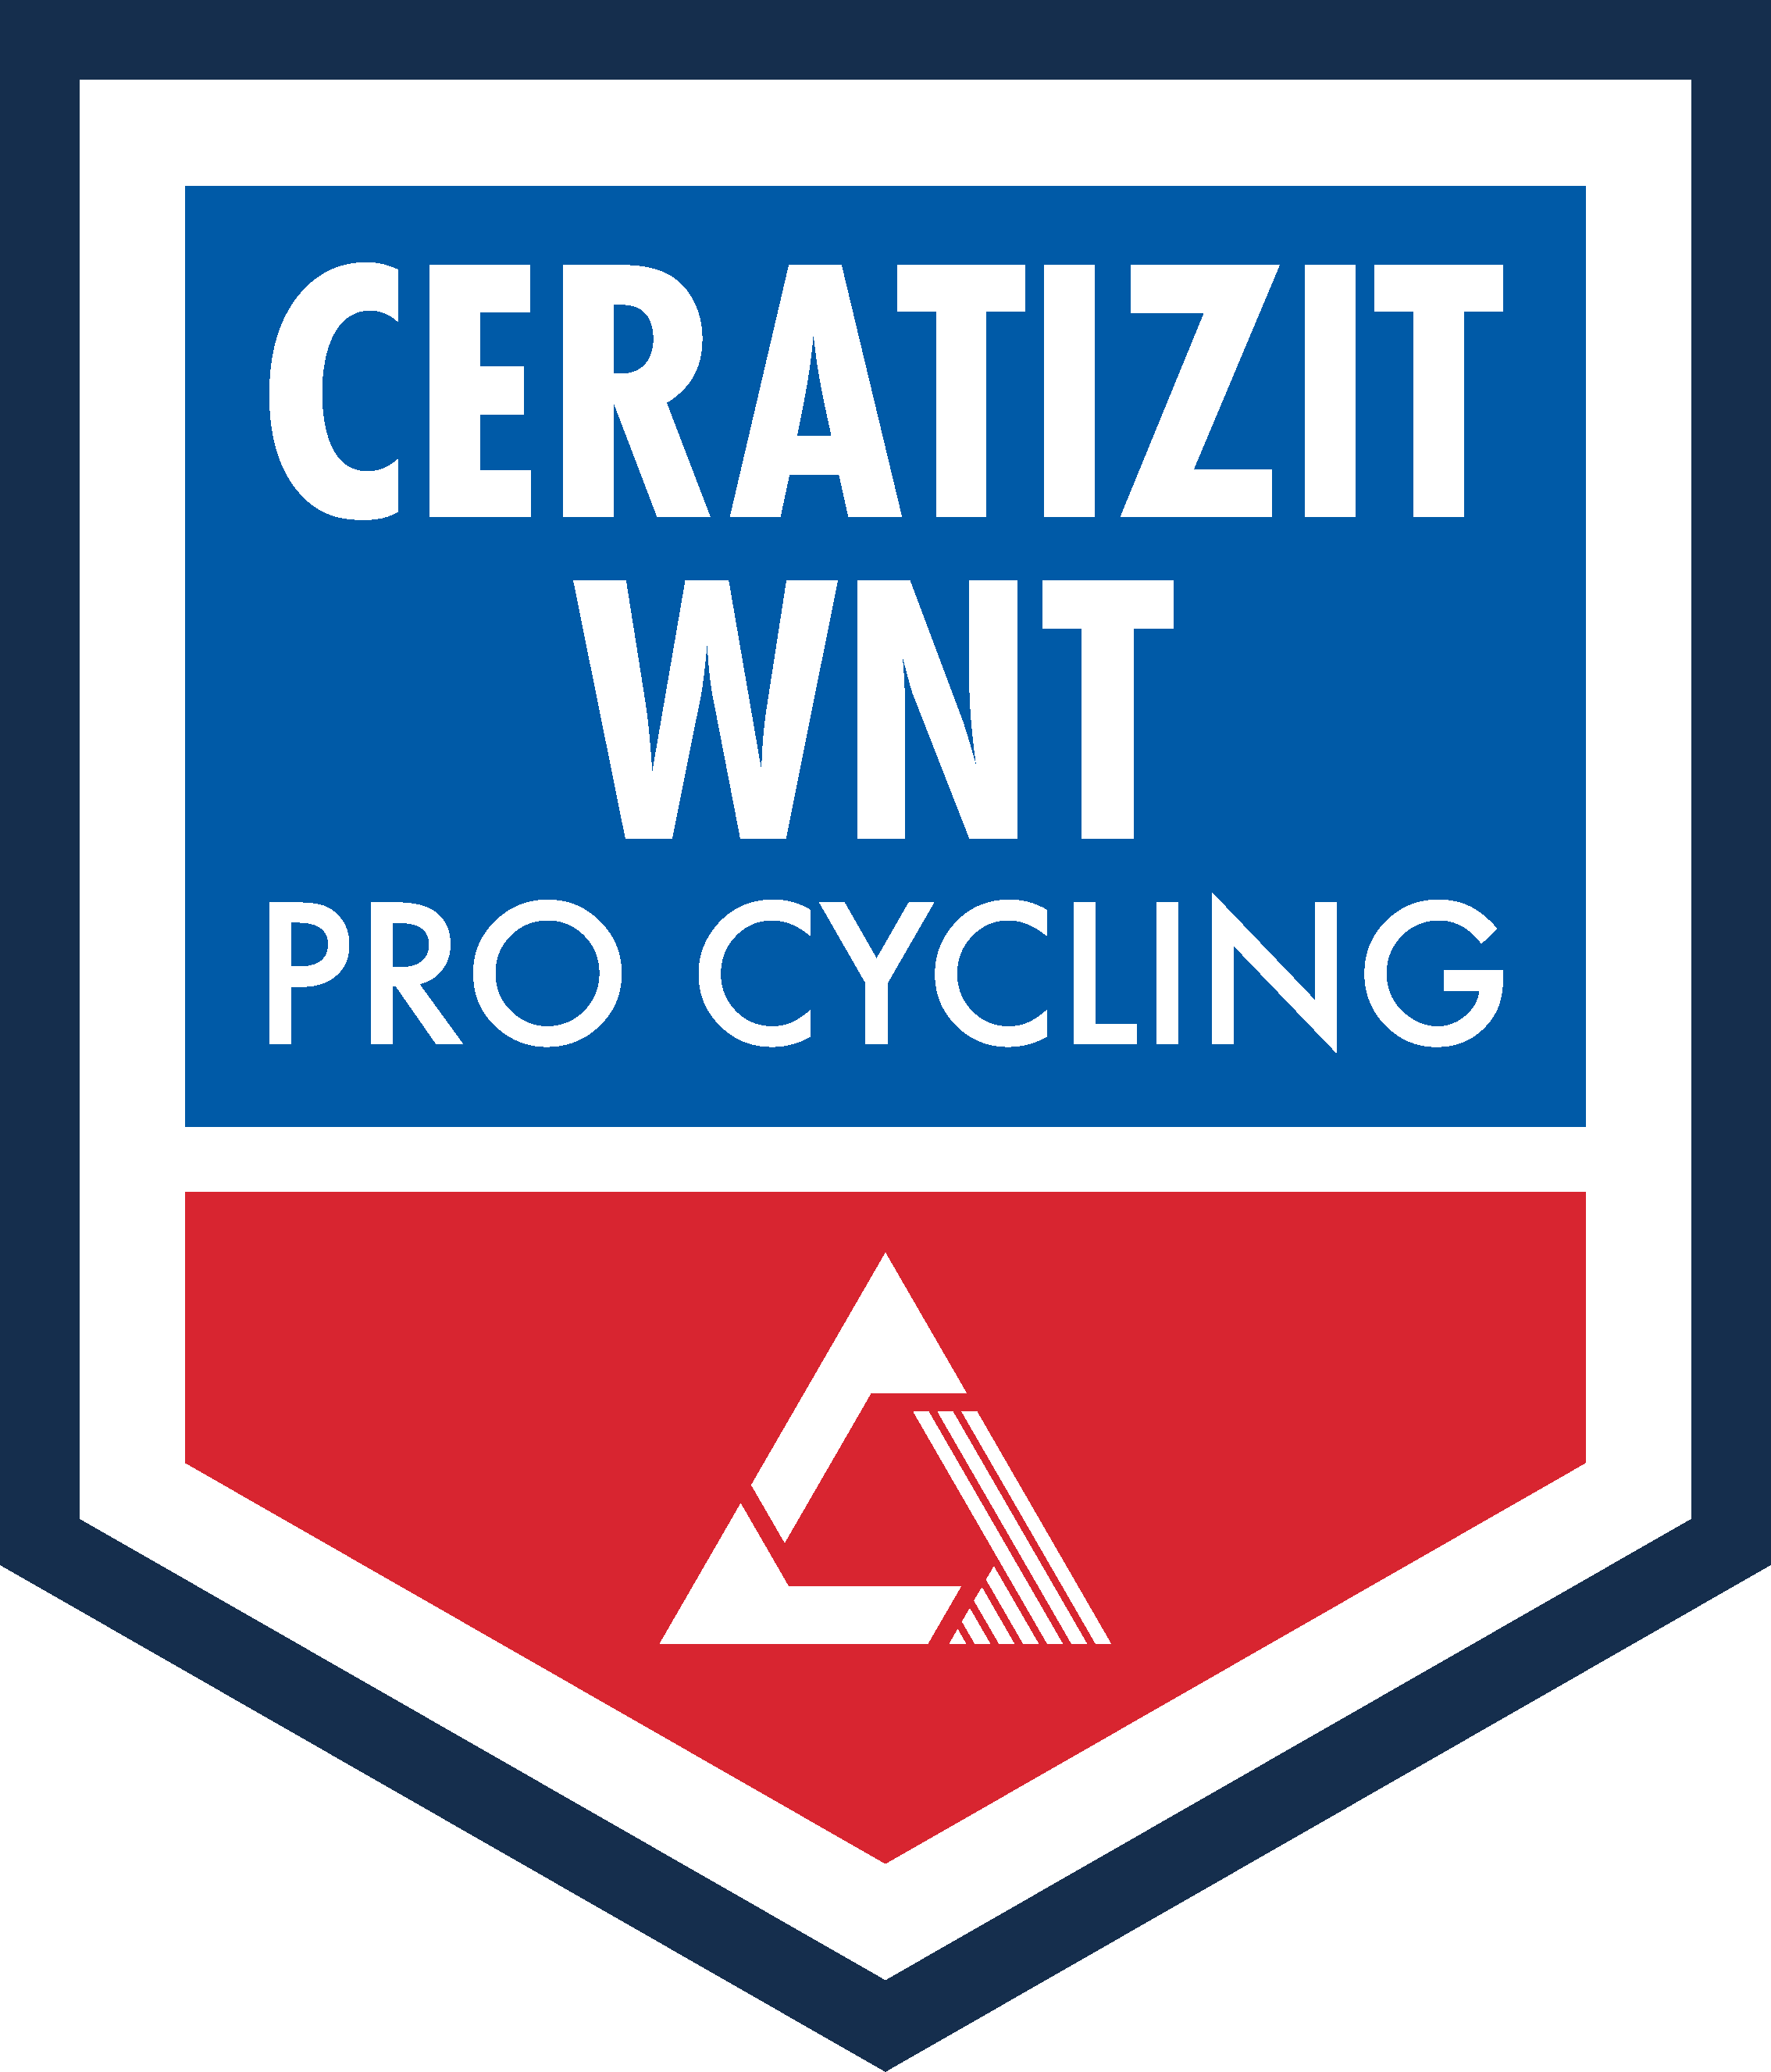 www.ceratizit-wnt-pro-cycling.com